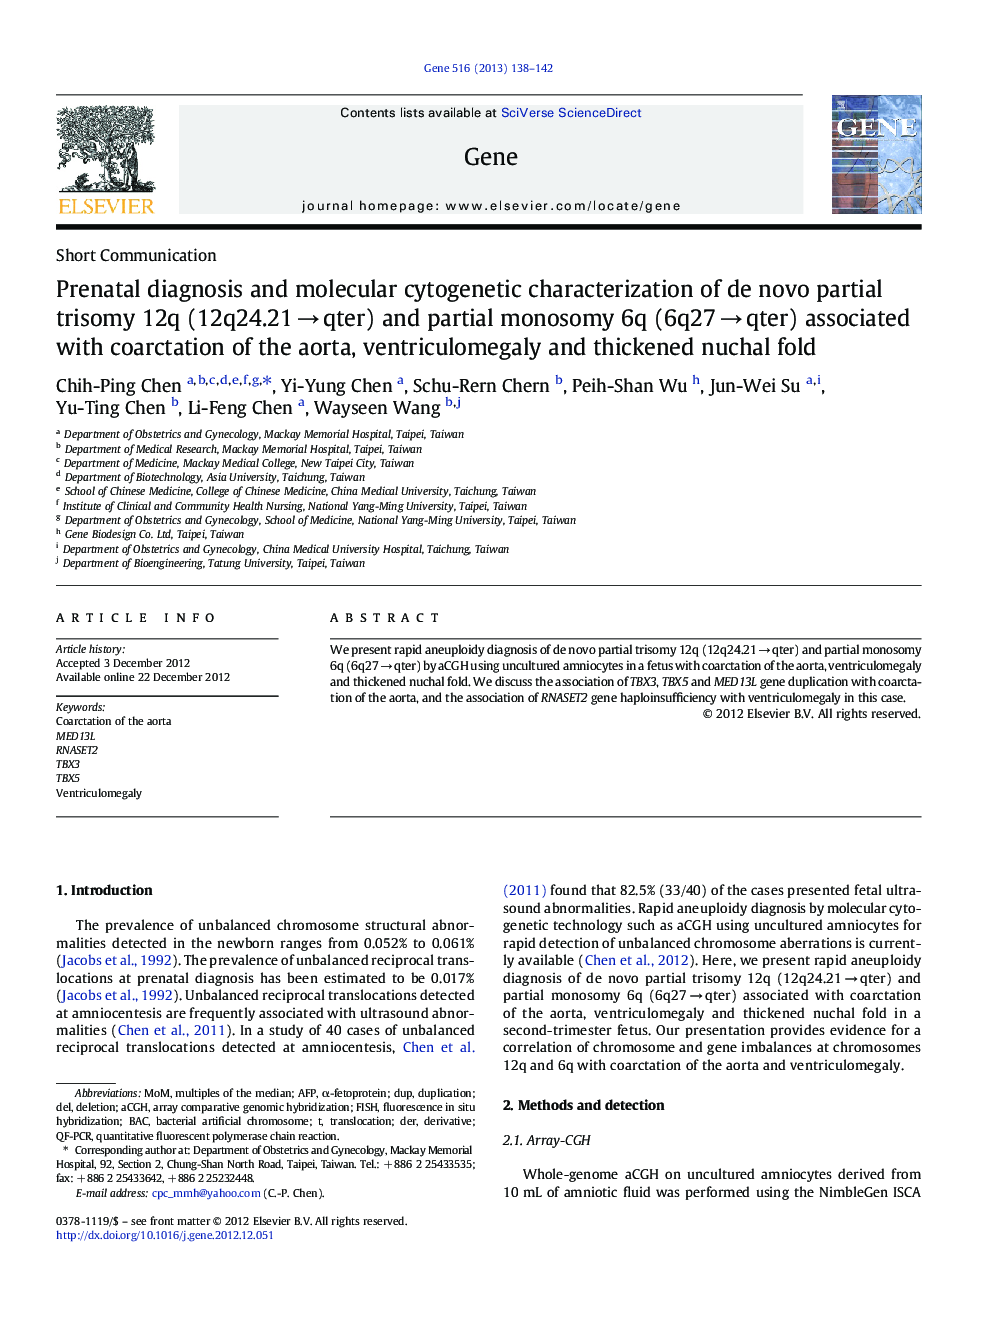 Prenatal diagnosis and molecular cytogenetic characterization of de novo partial trisomy 12q (12q24.21Â âÂ qter) and partial monosomy 6q (6q27Â âÂ qter) associated with coarctation of the aorta, ventriculomegaly and thickened nuchal fold